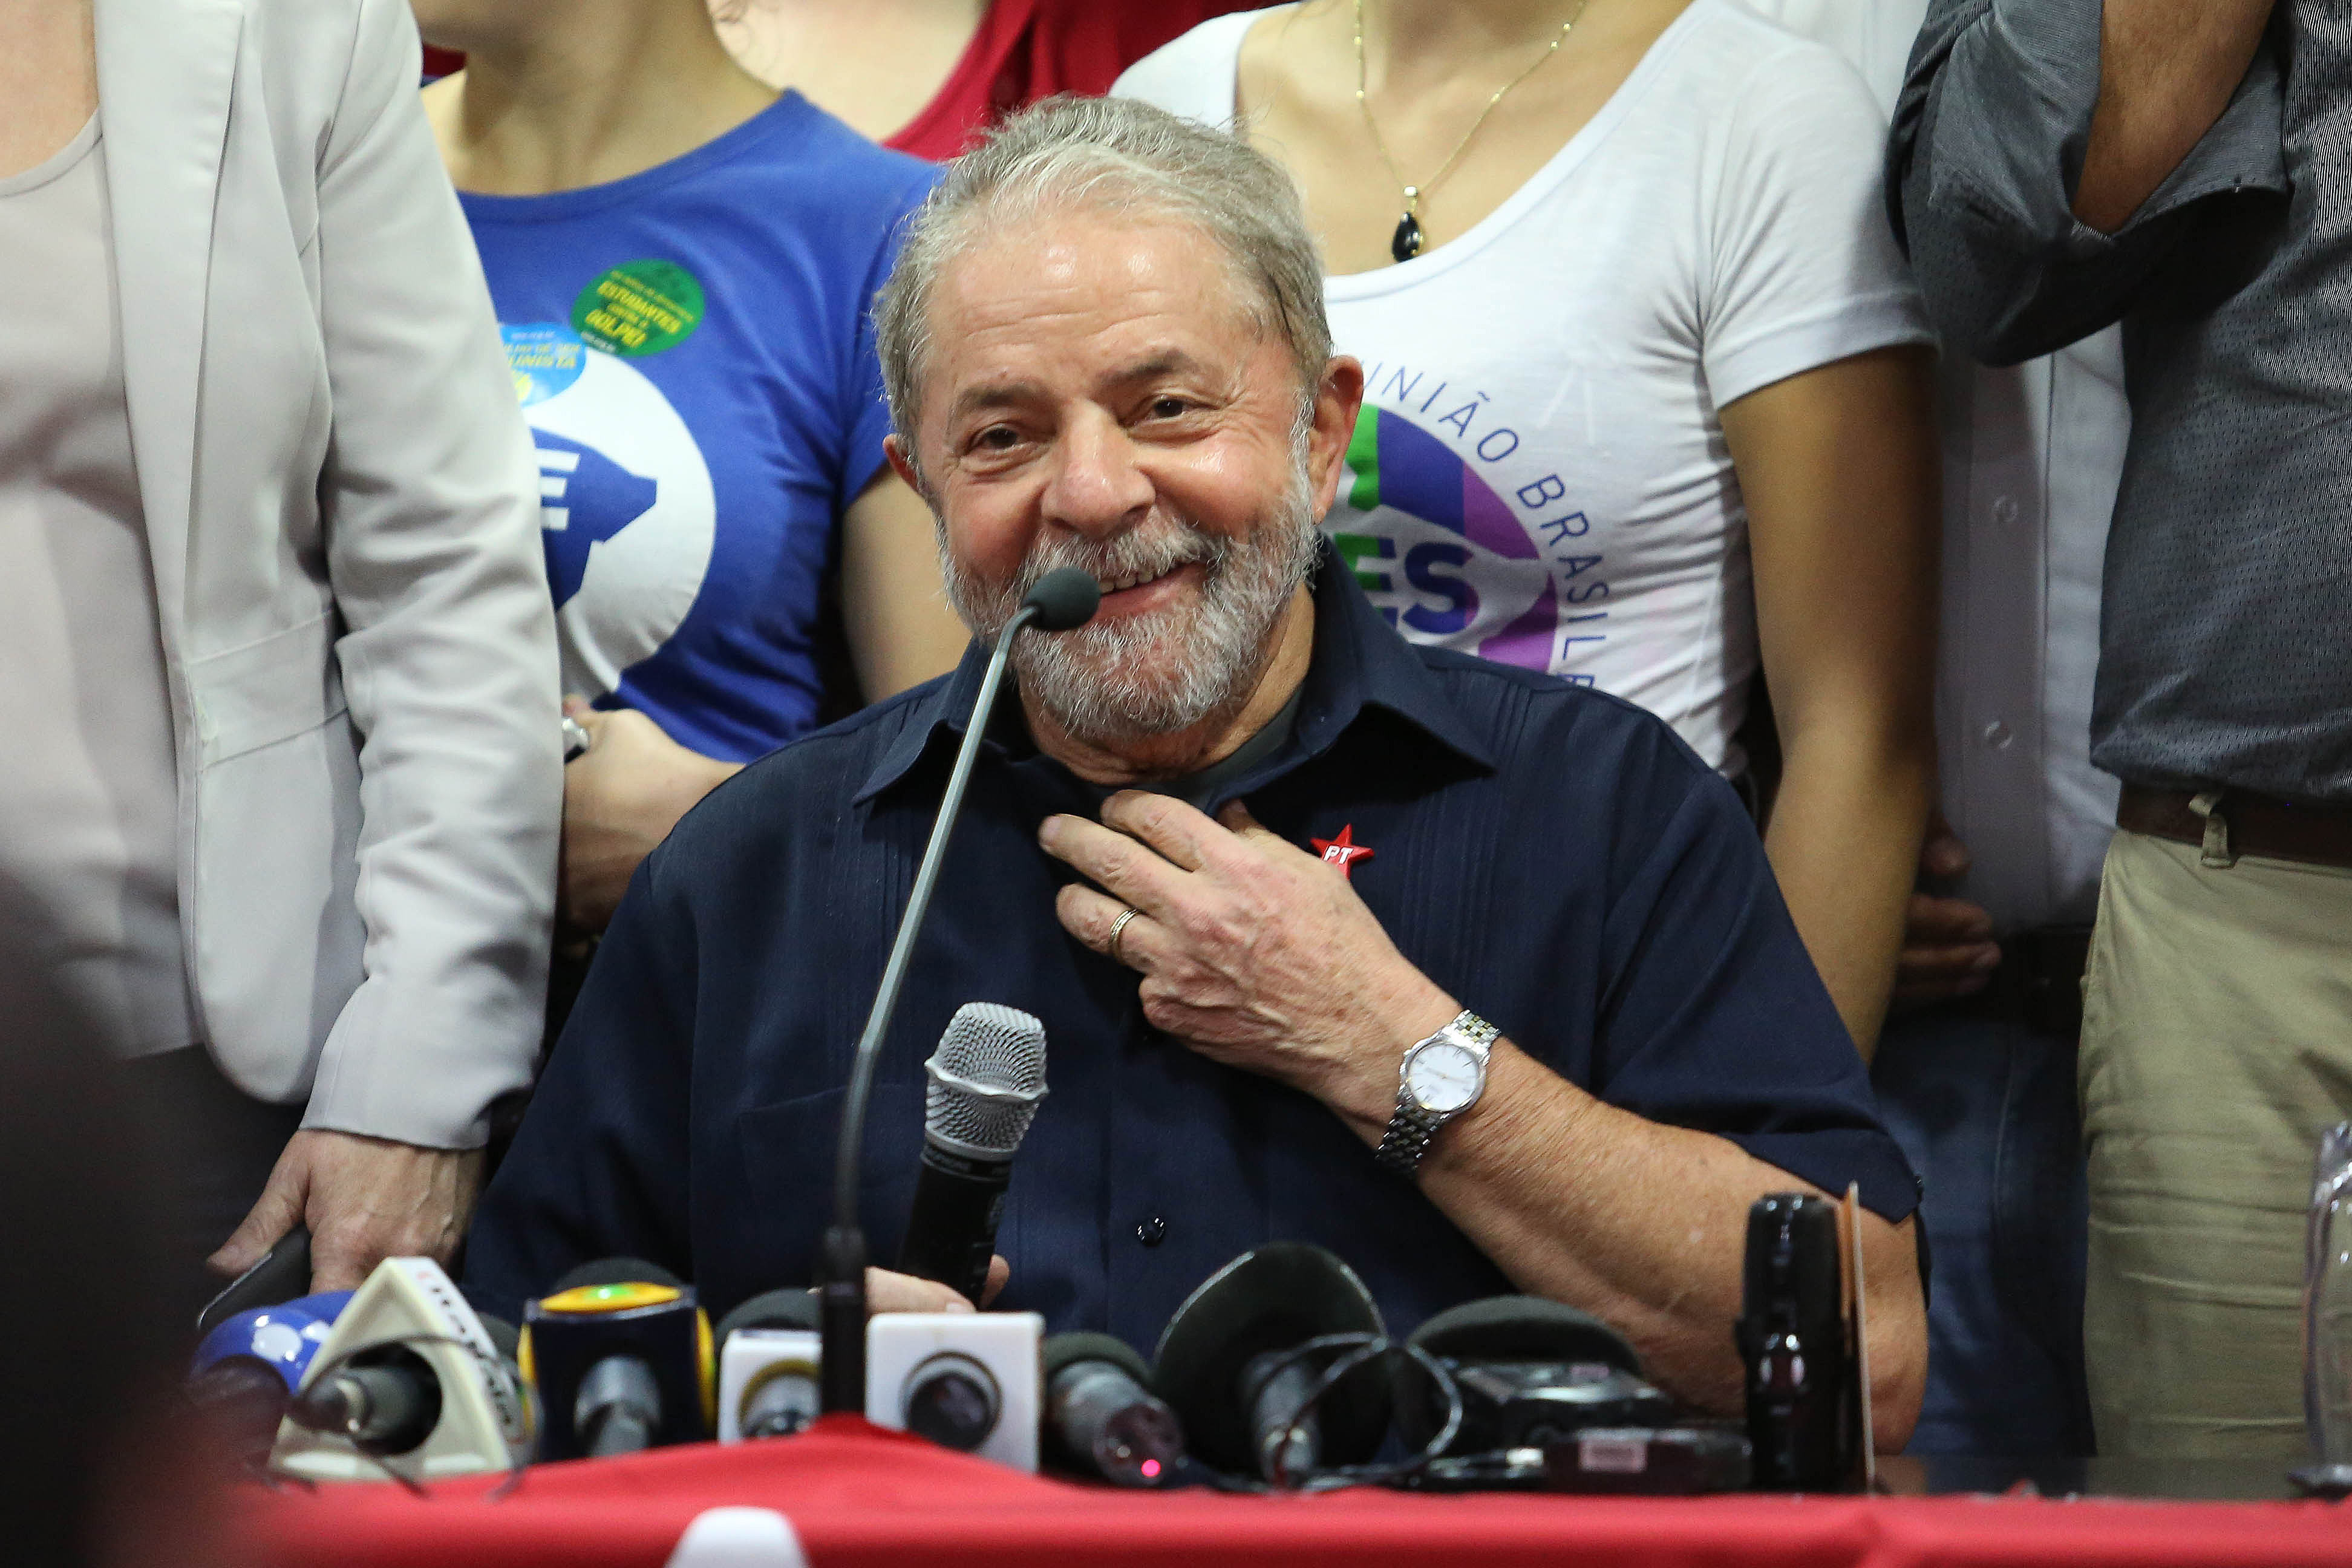 Una serie de acusaciones de corrupción contra Lula buscan erradicar al PT (Partido de los Trabajadores) del escenario electoral.